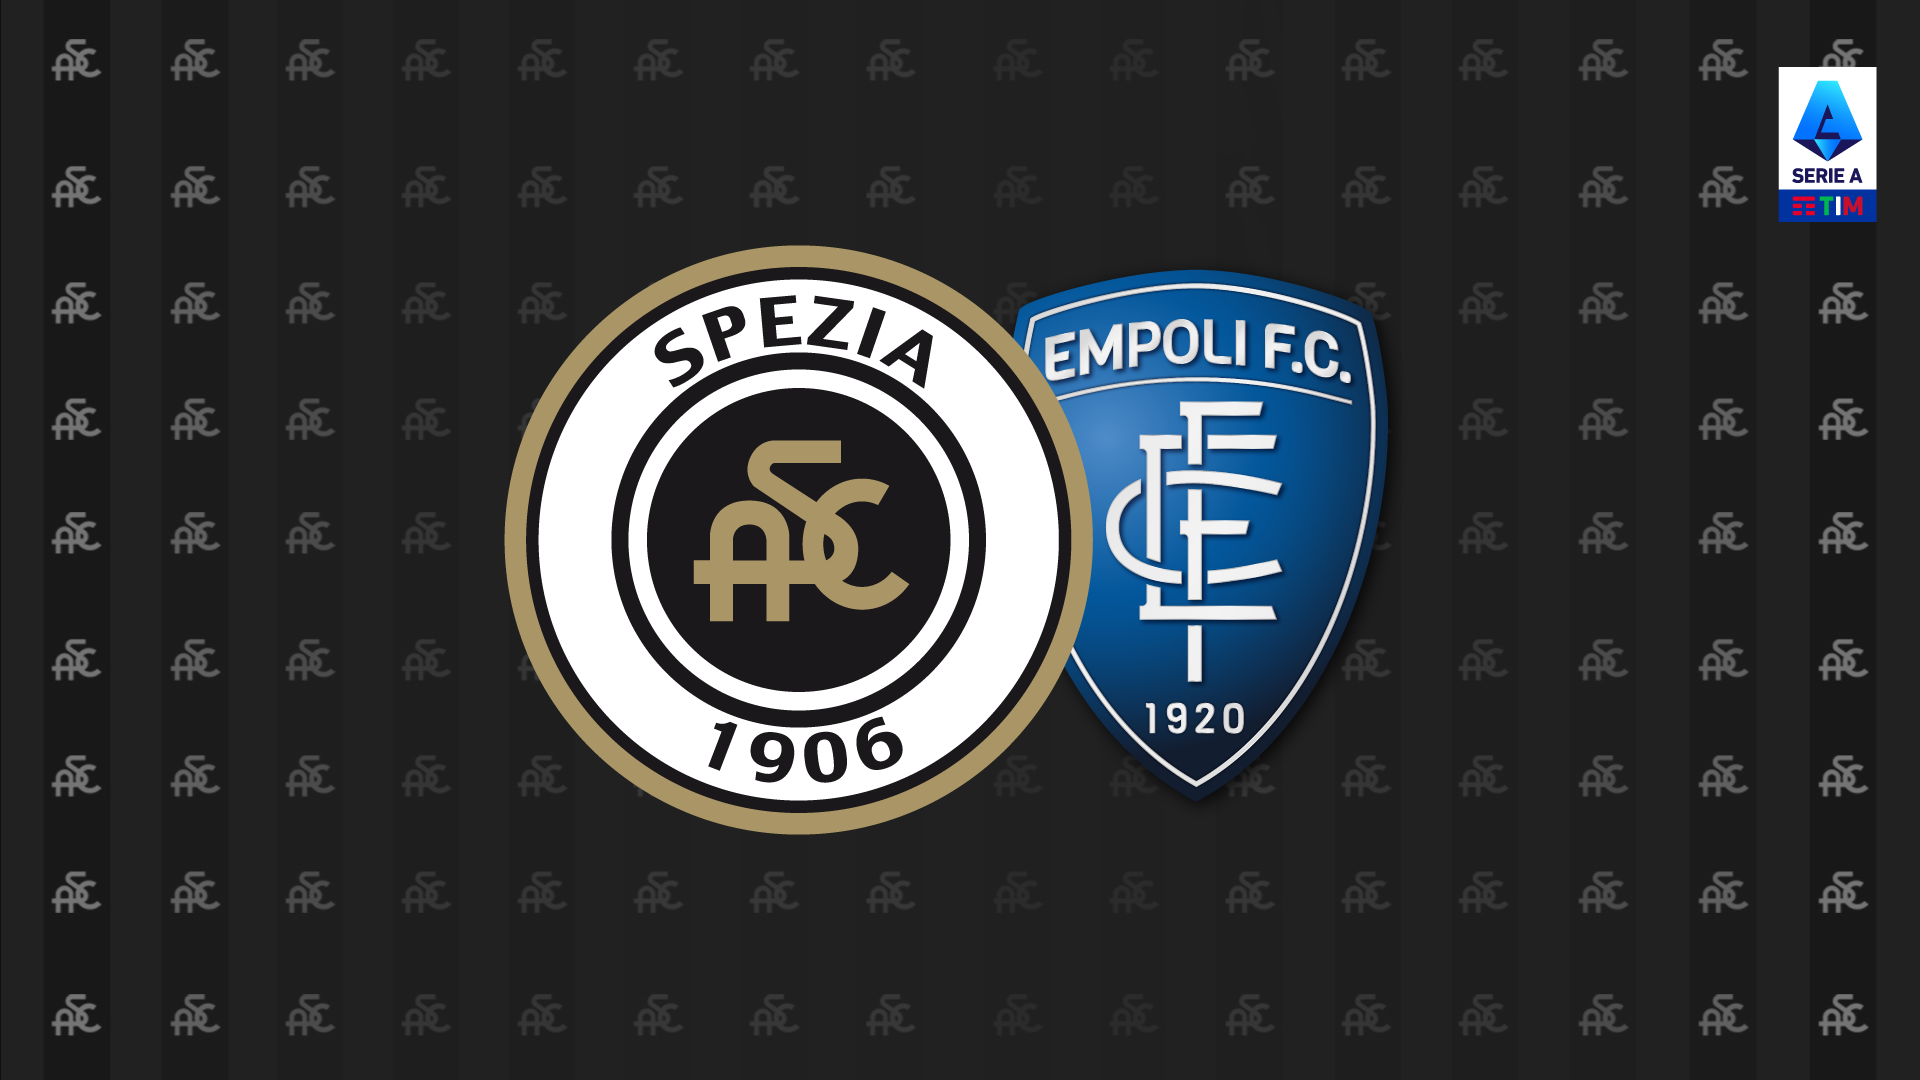 Spezia-Empoli: free sale from Wednesday 15